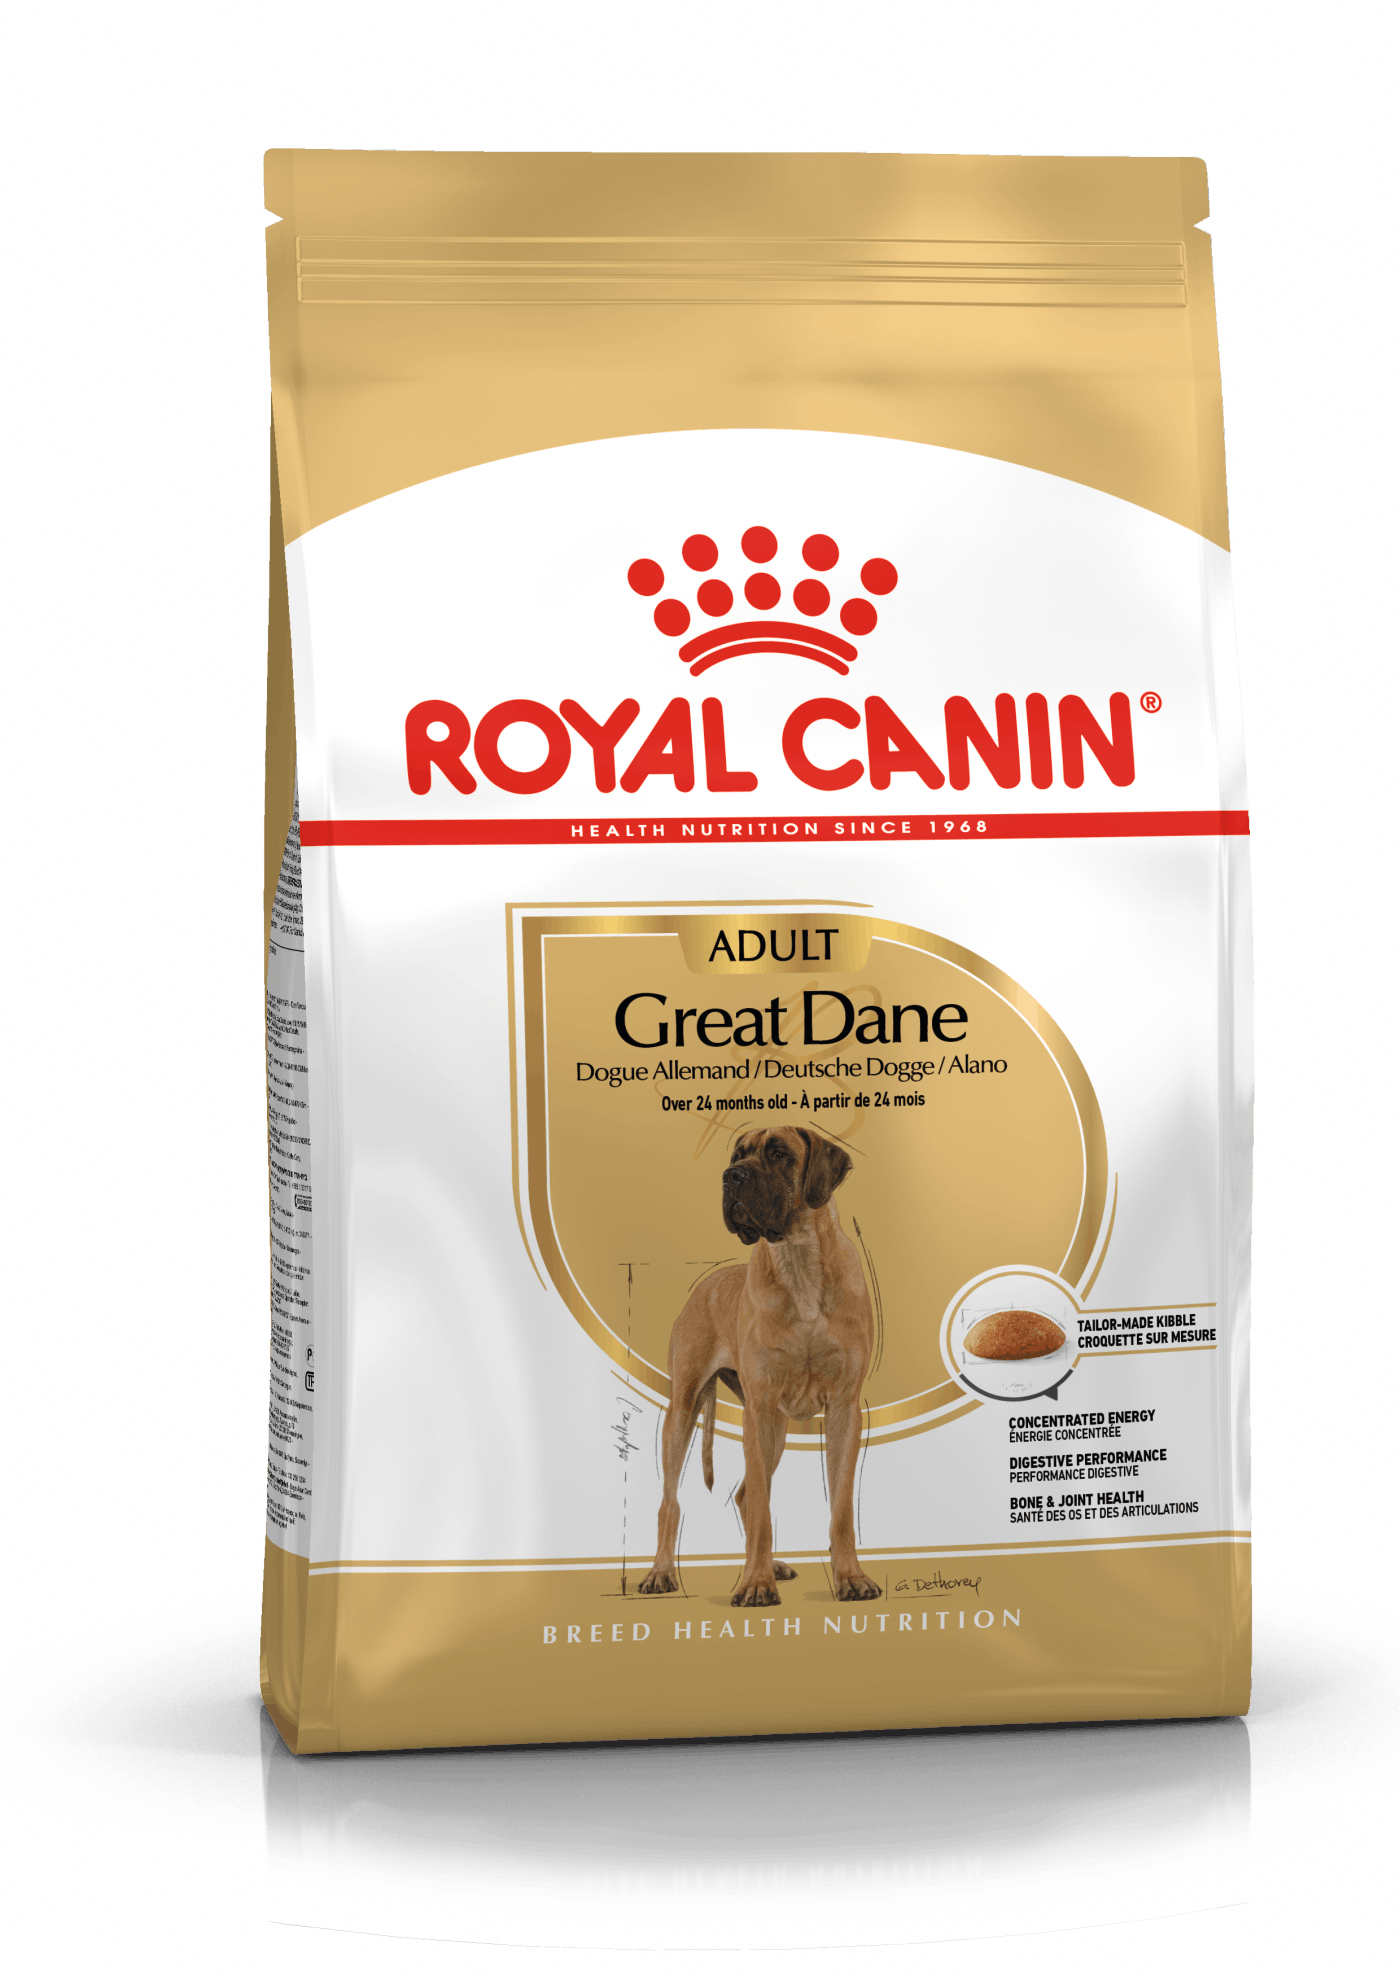 Billede af Royal Canin Great Dane / Grand danois Adult - over 24 måneder. hund. (12kg)